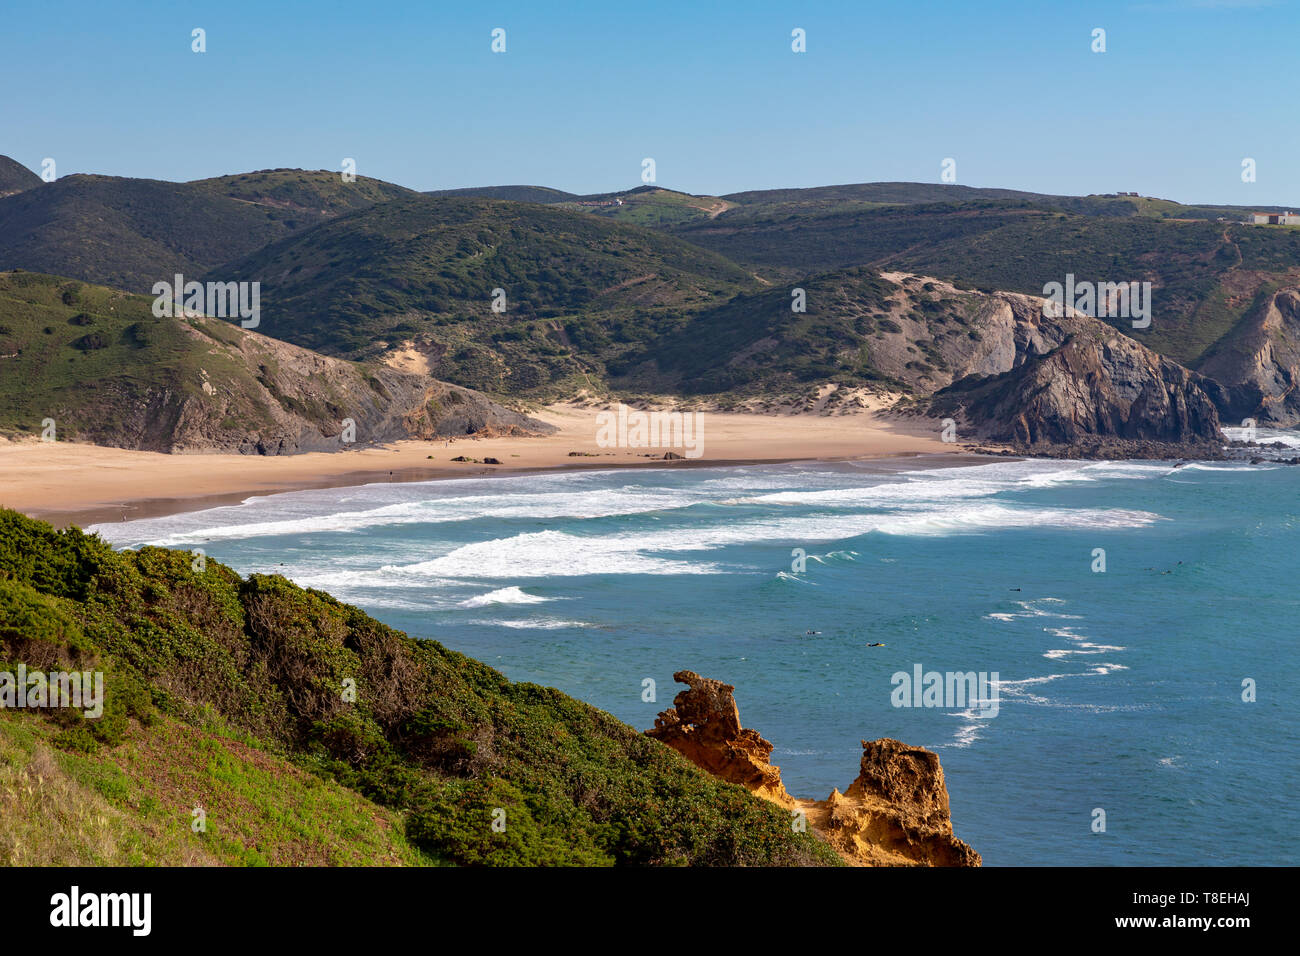 Praia do Amado in Costa Vicentina parco naturale all'Oceano Atlantico in Algarve, Portogallo. Foto Stock